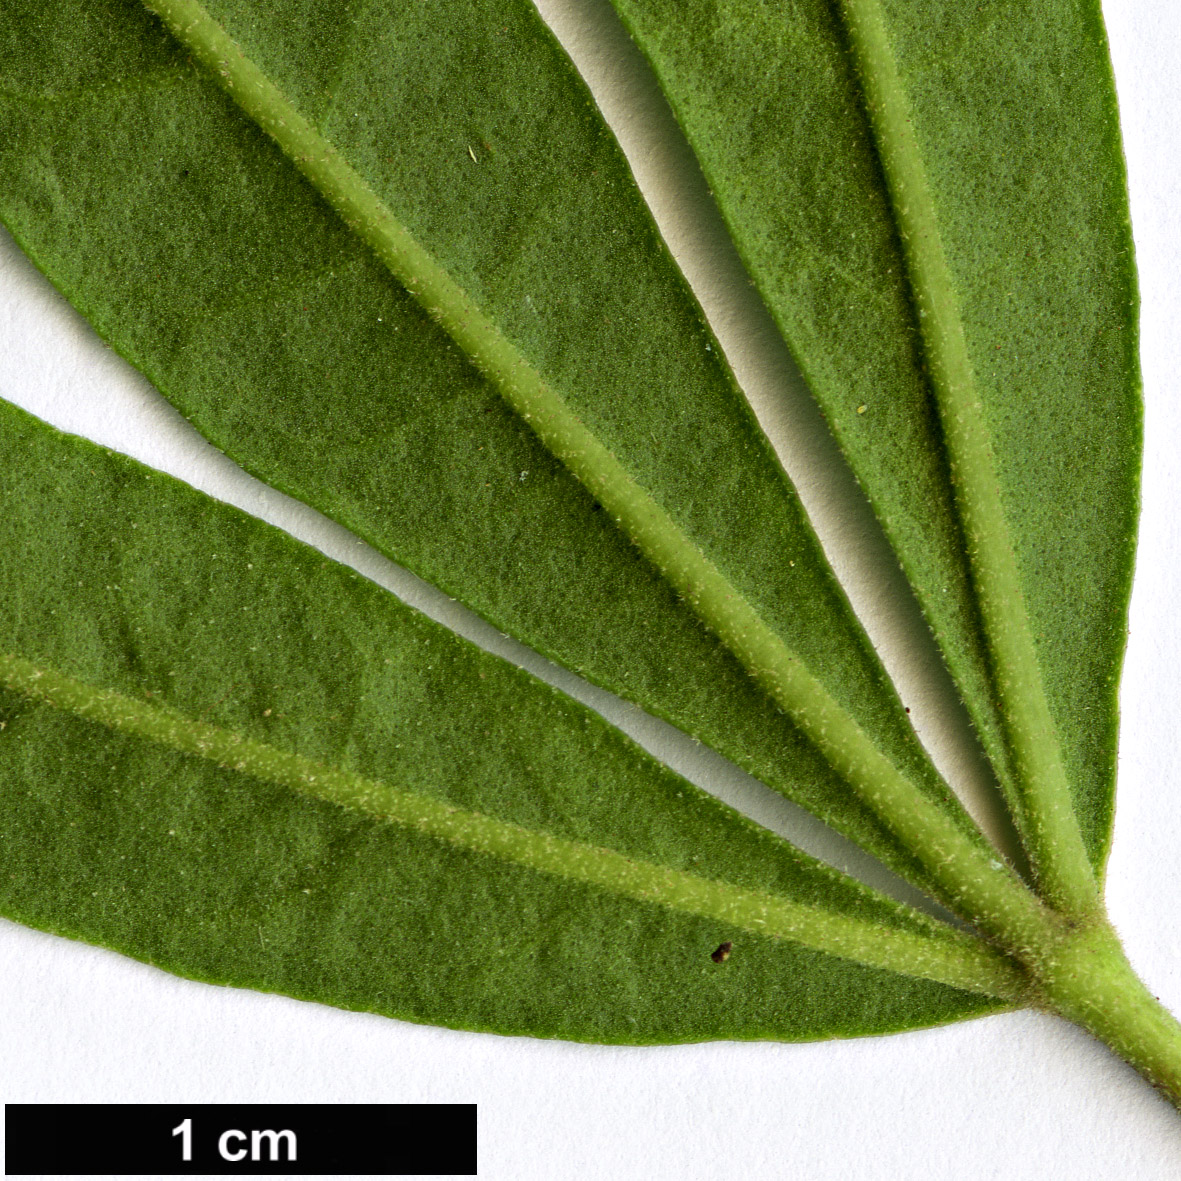 High resolution image: Family: Rutaceae - Genus: Zieria - Taxon: arborescens